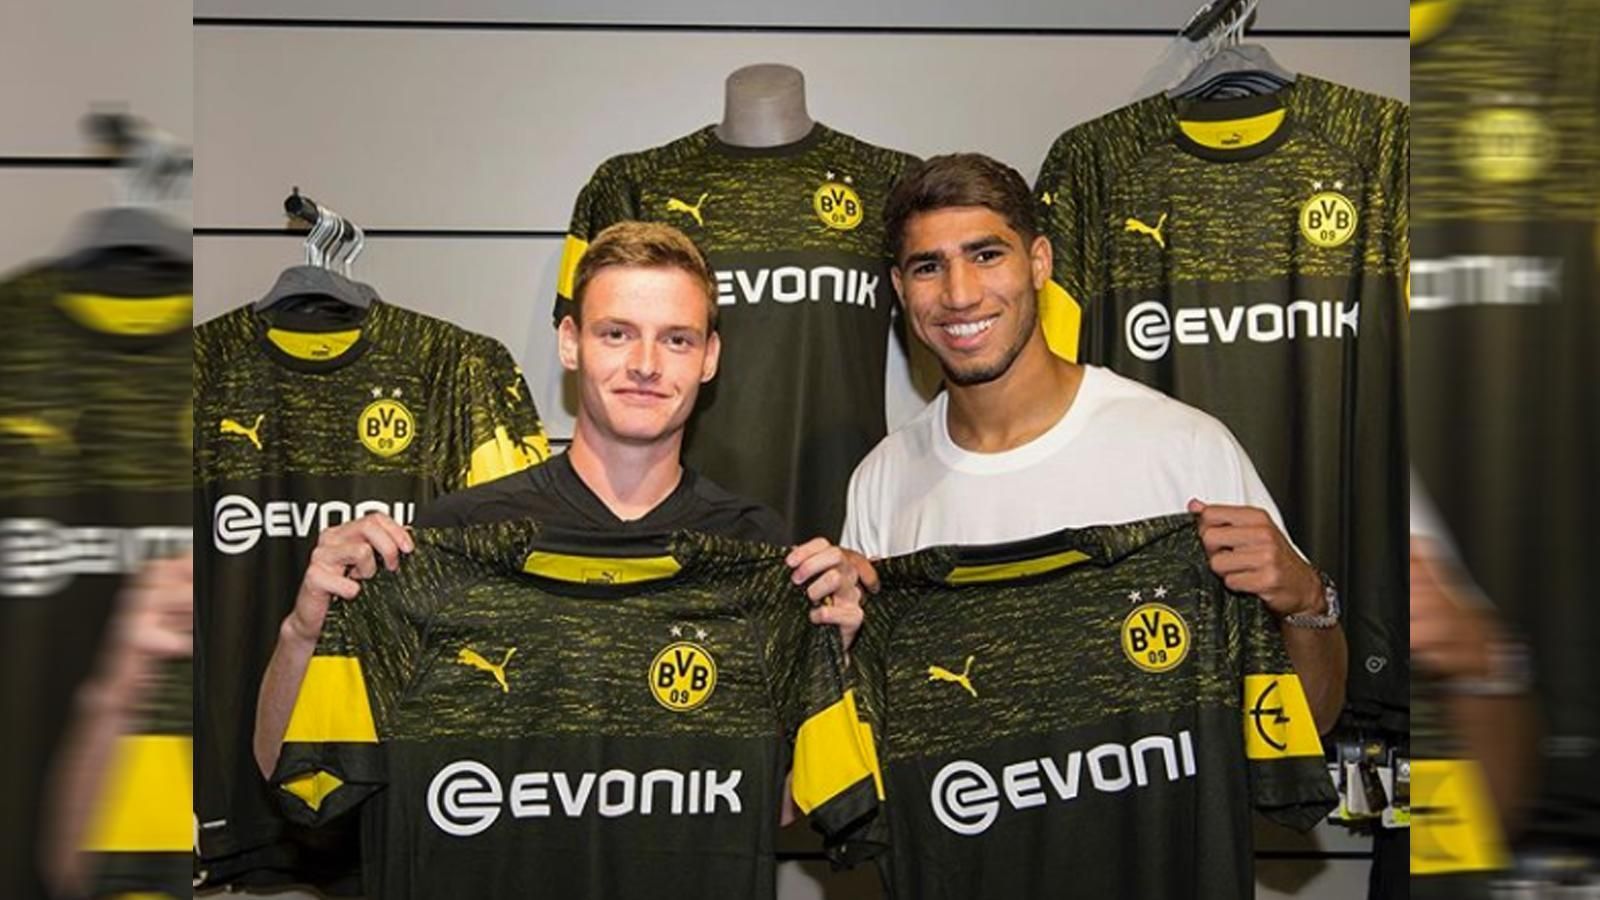 
                <strong>Borussia Dortmund (Auswärtstrikot)</strong><br>
                Die BVB-Youngsters Sergio Gomez und Achraf Hakimi präsentieren den neuen Auswärts-Look des BVB. Das Trikot ist überwiegend in Schwarz gehalten, der Brustbereich ist mit gelben Farbtupfern gesprenkelt.
              